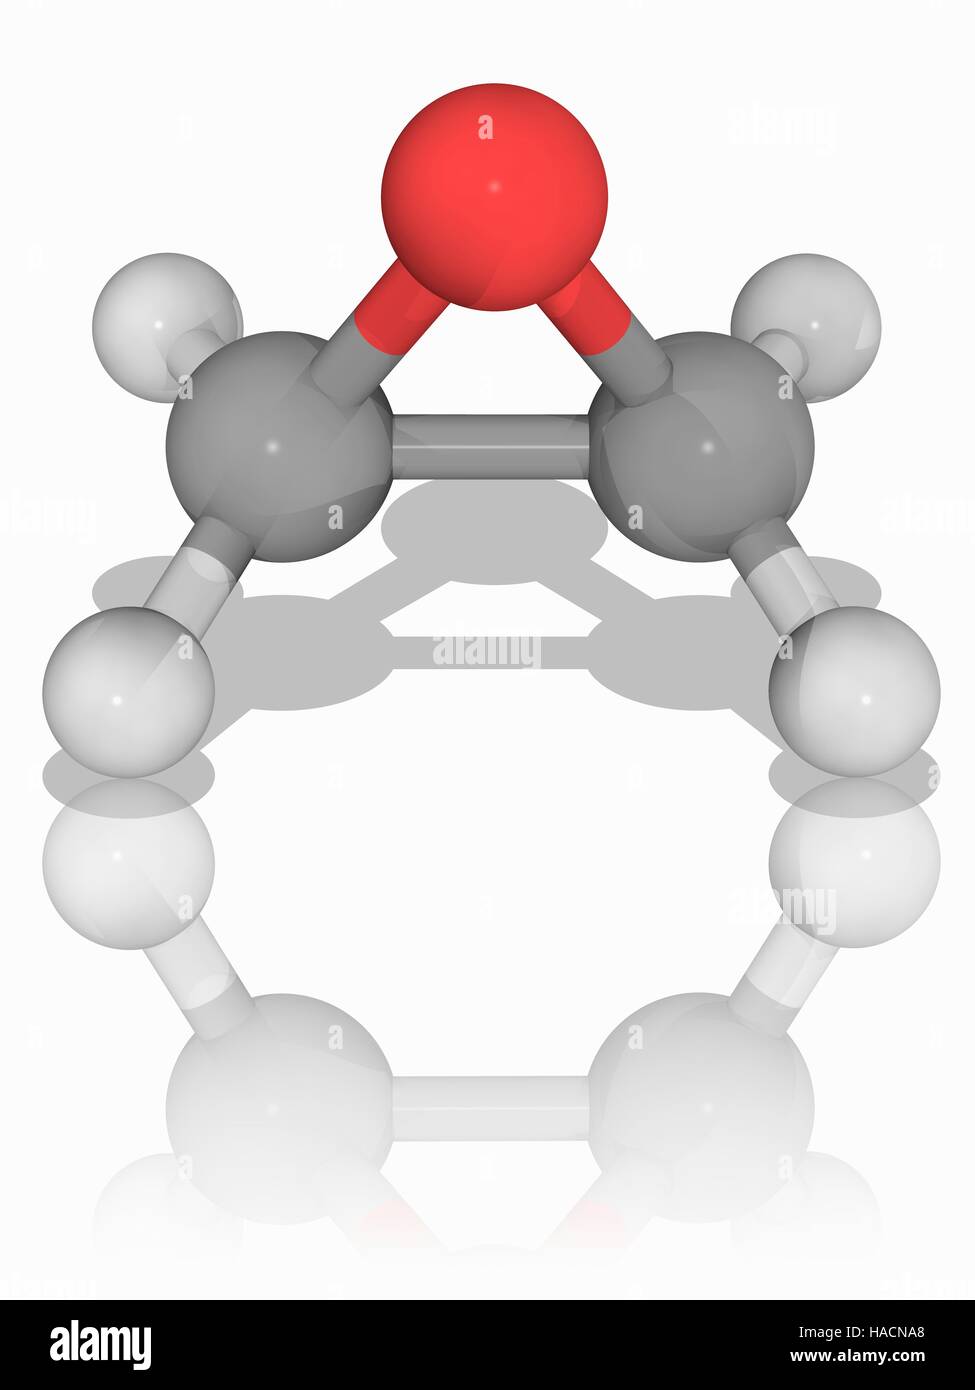 Ethylenoxid. Molekulares Modell des zyklischen Ether Ethylenoxid (C2. H4. (O), auch bekannt als oxiran. Diese organische Verbindung ist ein farbloses brennbares Gas. Es dient in der chemischen Industrie für die Synthese von Ethylen Glykol. Es ist das einfachste Beispiel für ein Epoxid. Atome als Kugeln dargestellt werden und sind farblich gekennzeichnet: Kohlenstoff (grau), Wasserstoff (weiß) und Sauerstoff (rot). Abbildung. Stockfoto